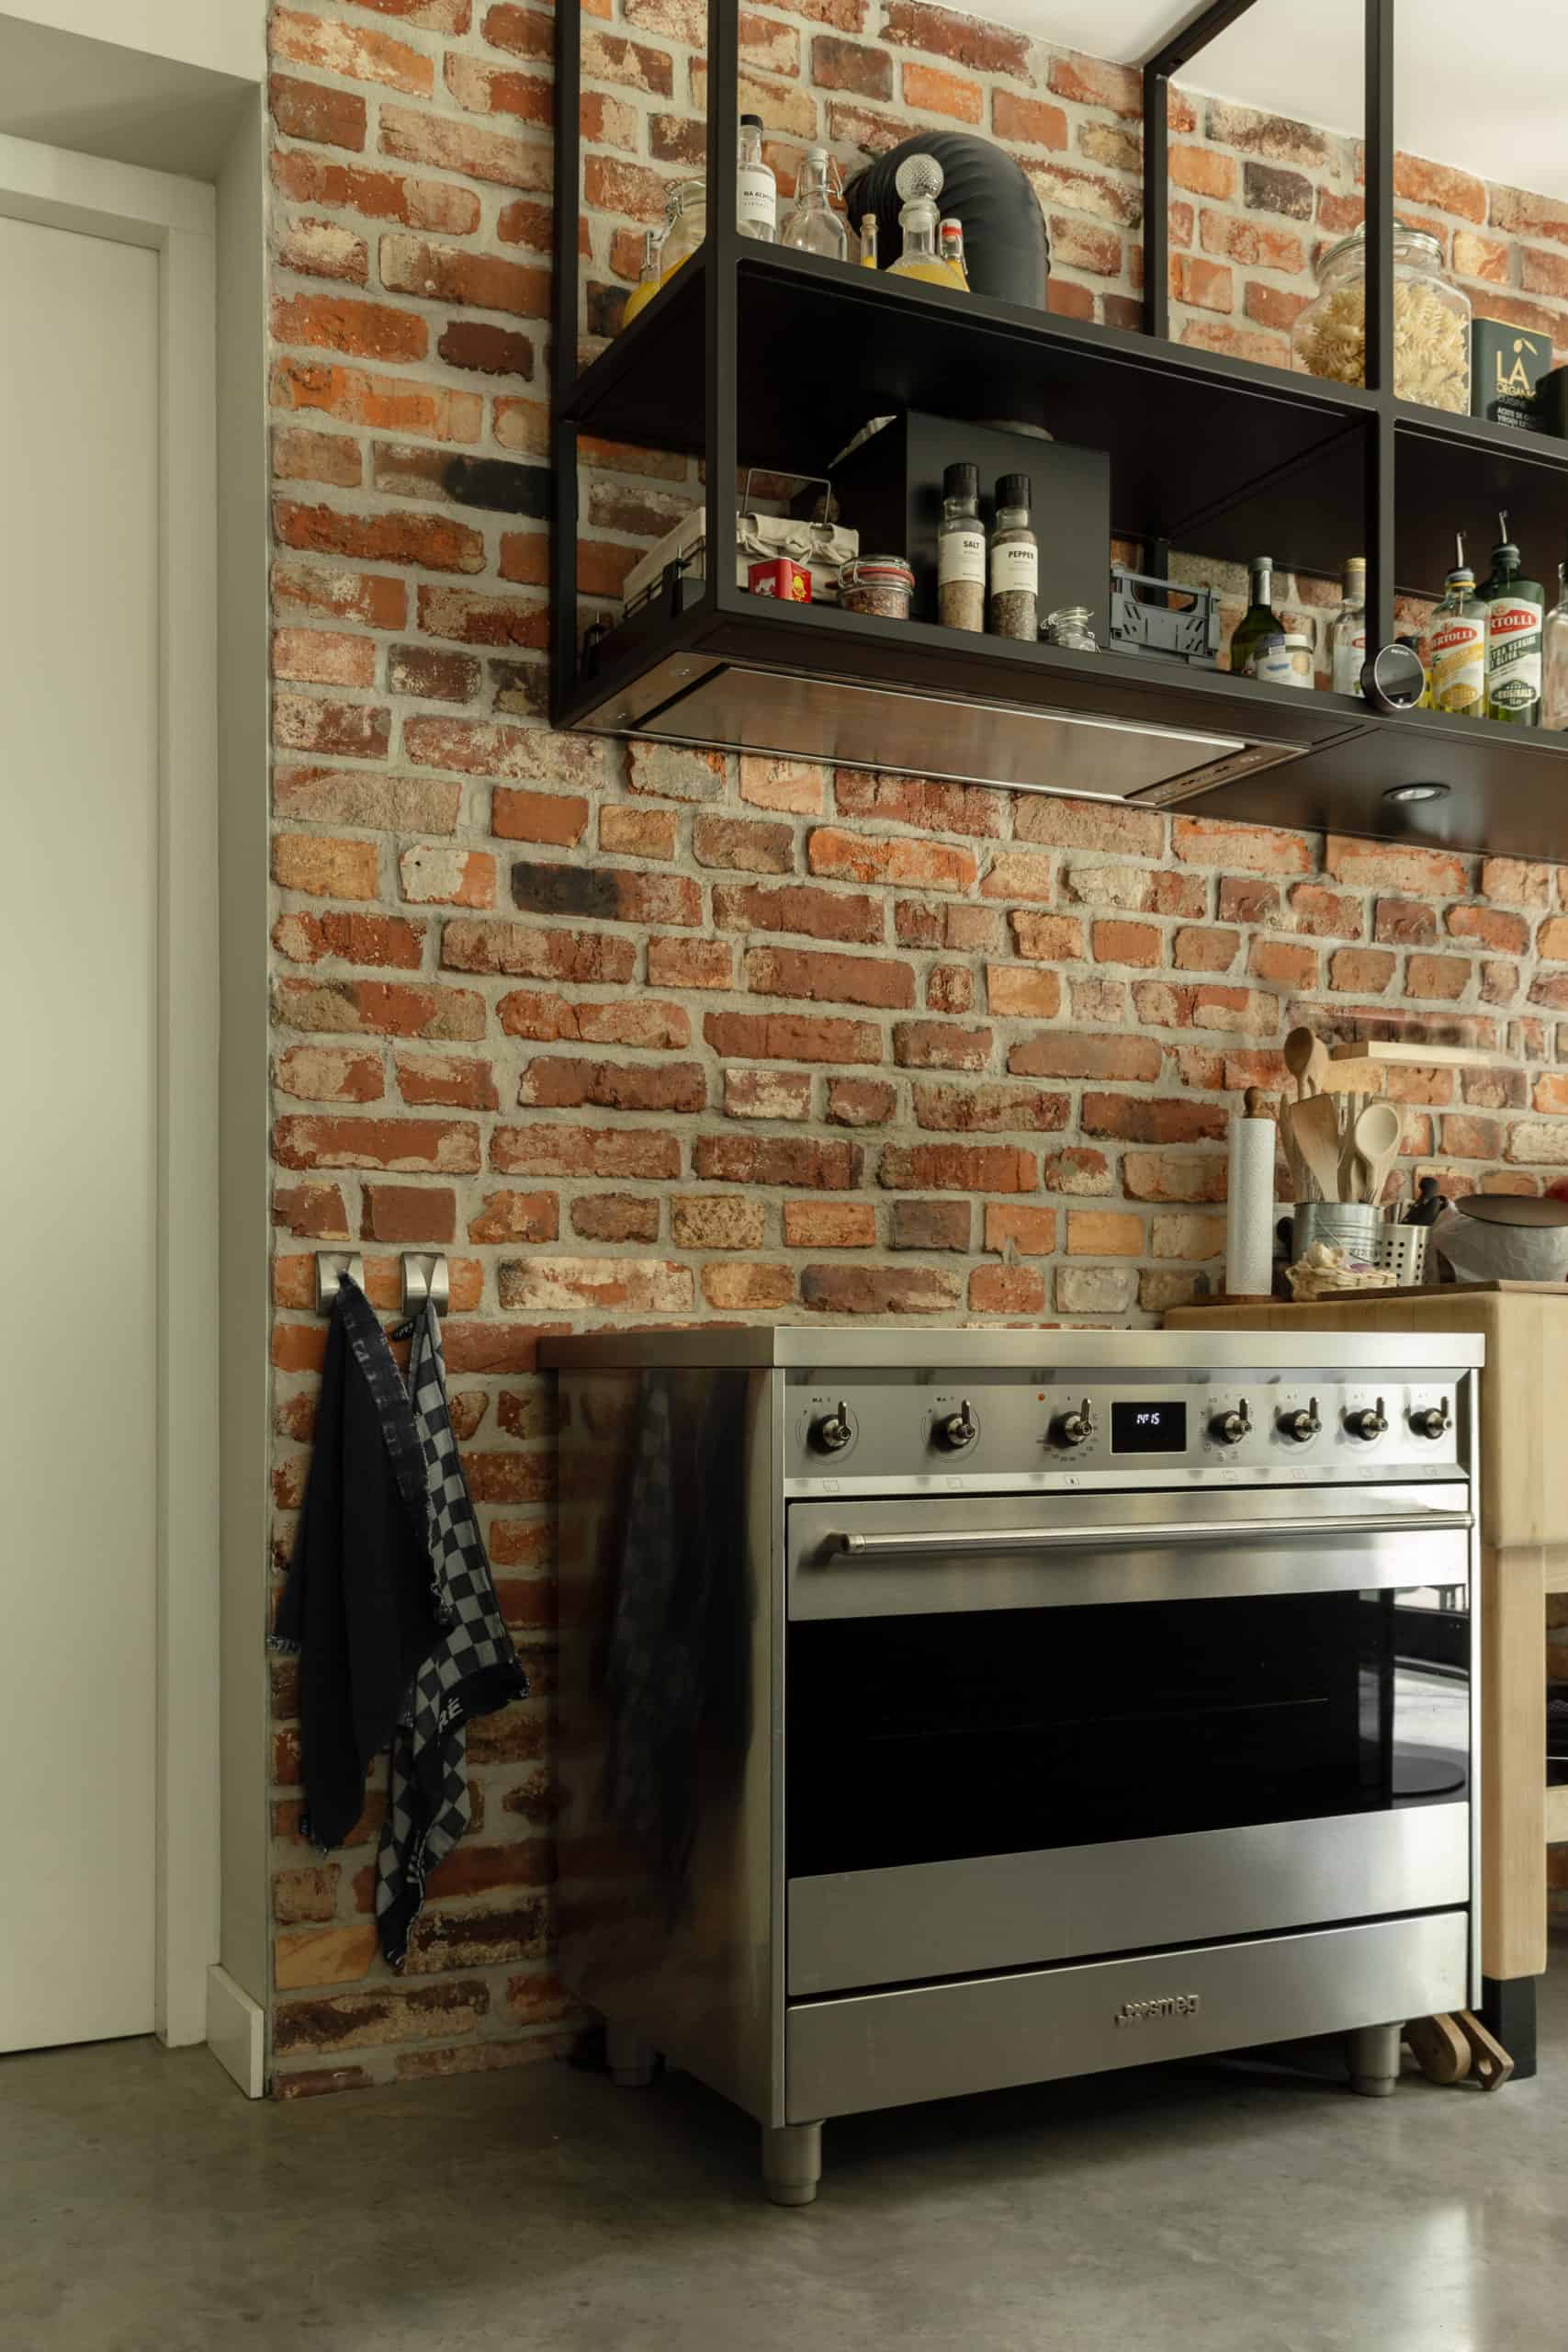 Bakstenen muur in de keuken in Hilvarenbeek met hiervoor een oven. Deze staat op een gevlinderde betonvloer.